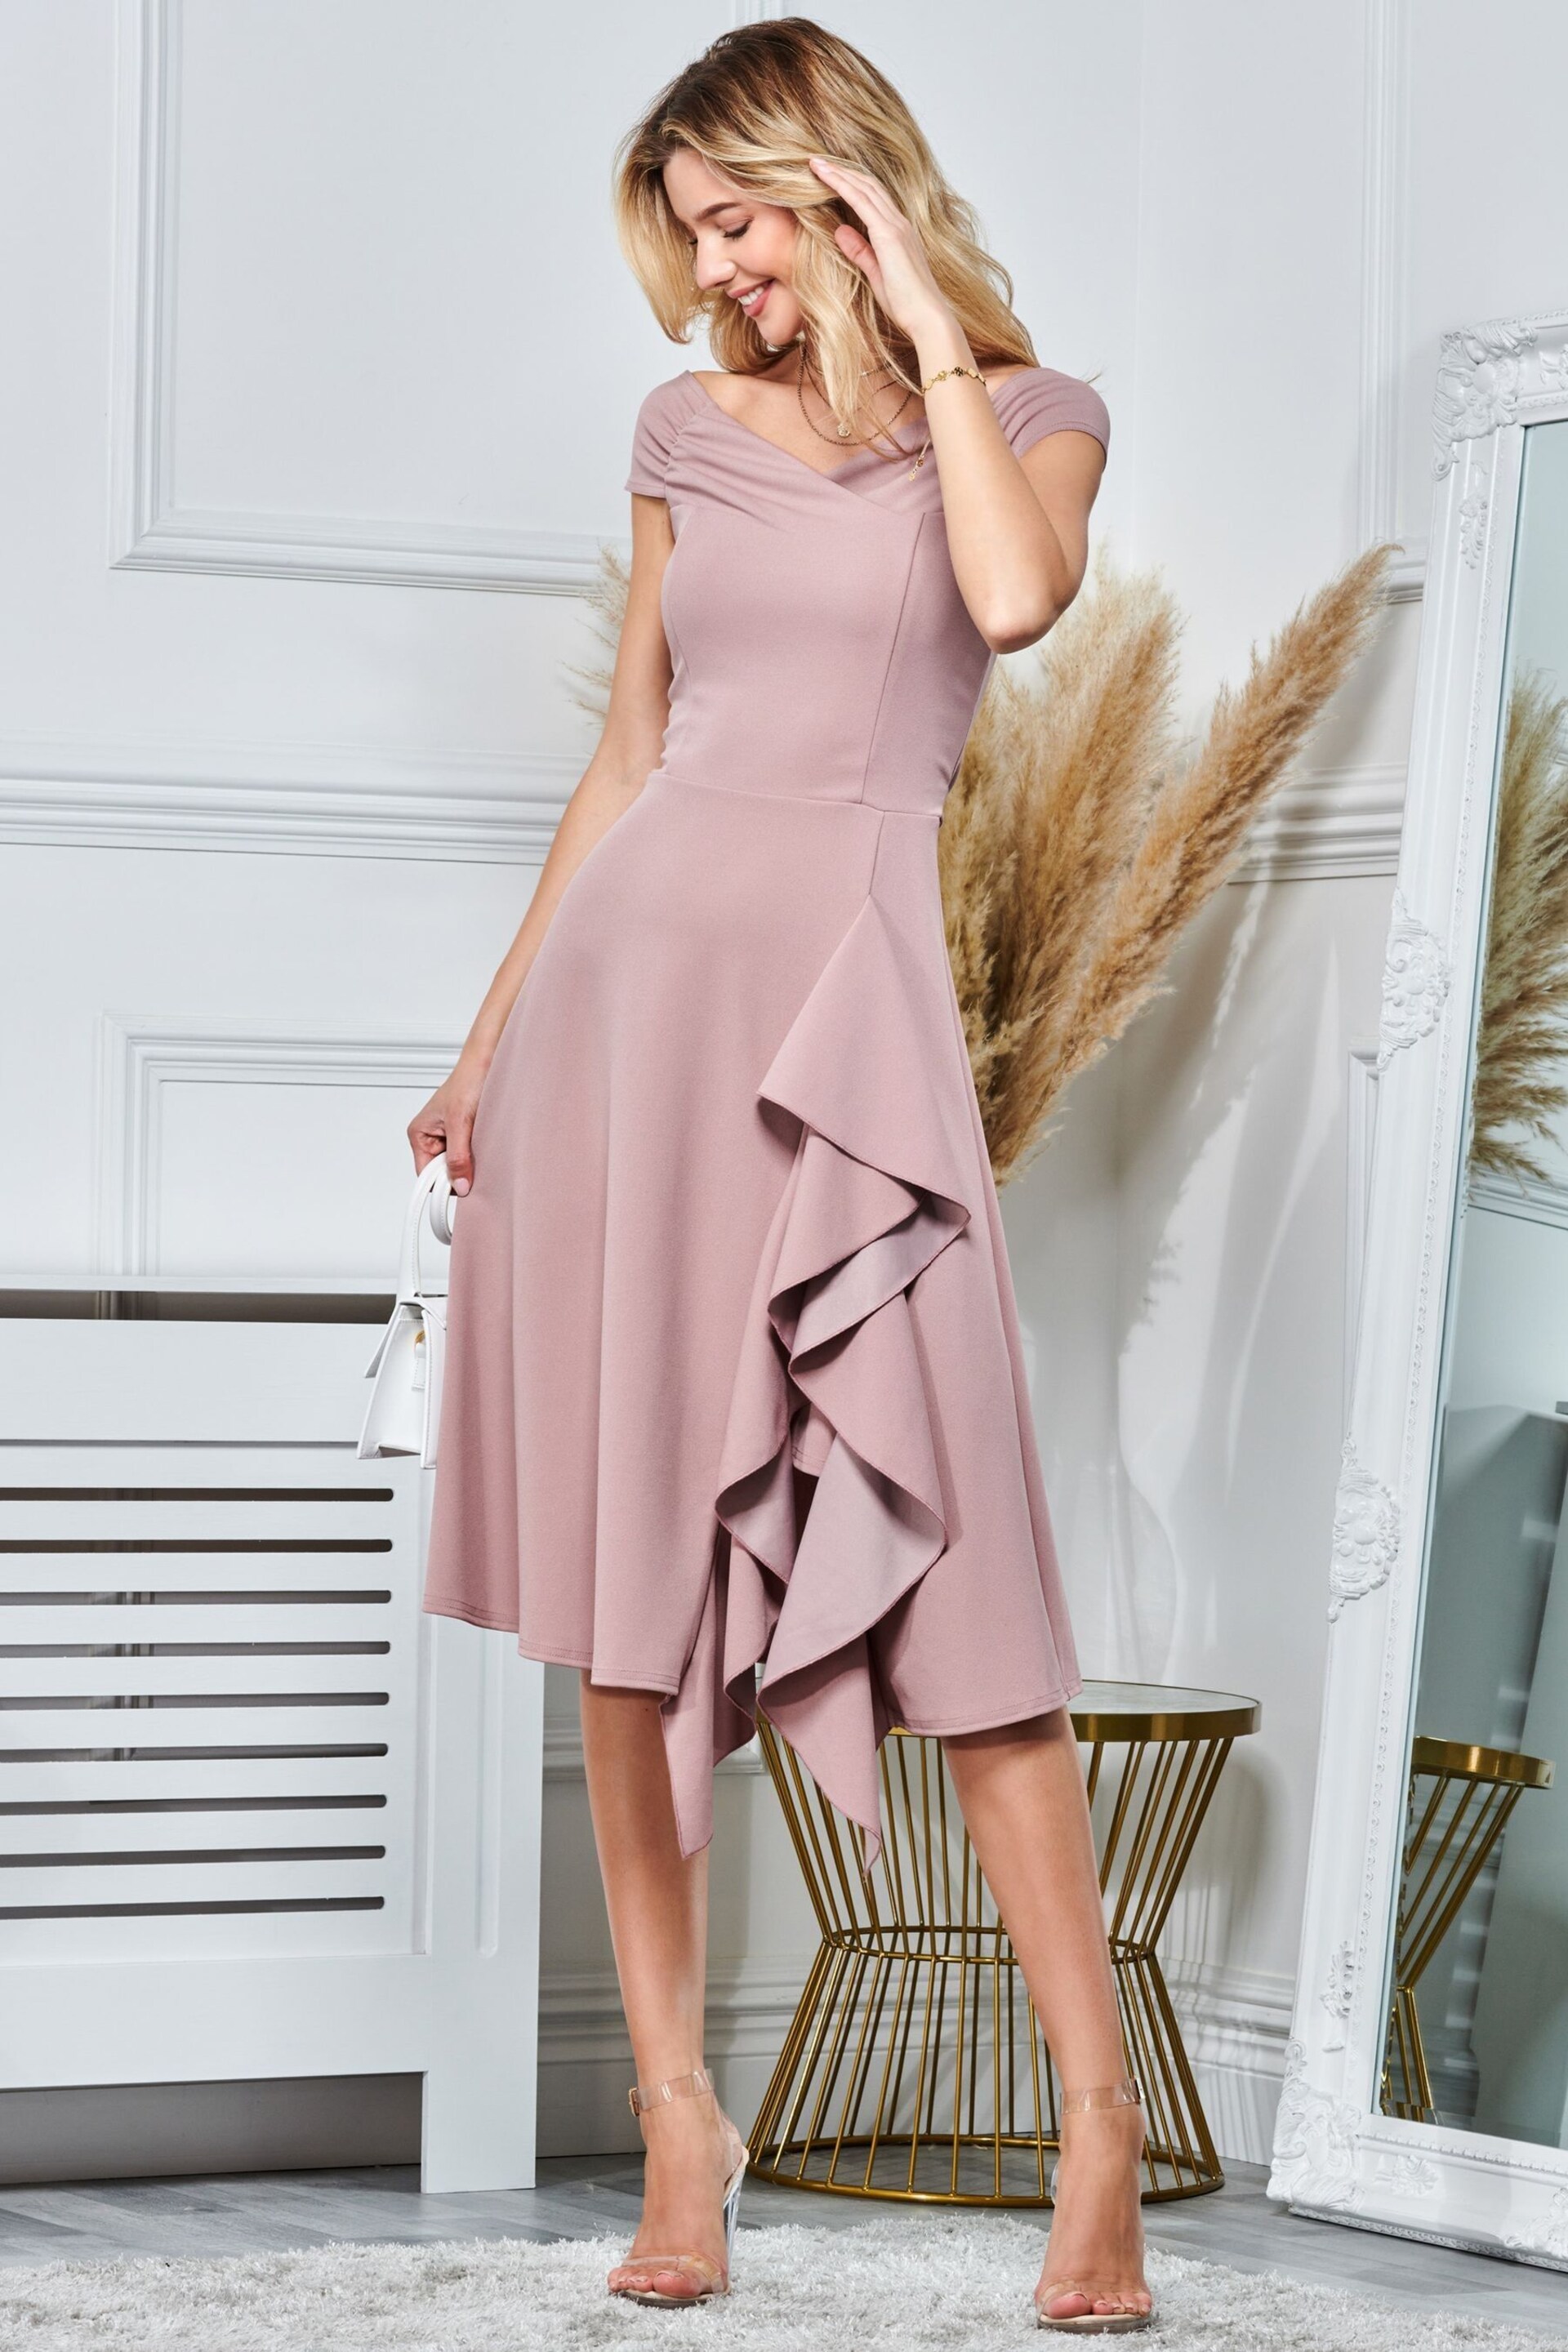 Jolie Moi Pink Skylar Off Shoulder Ruffle Hem Dress - Image 4 of 5